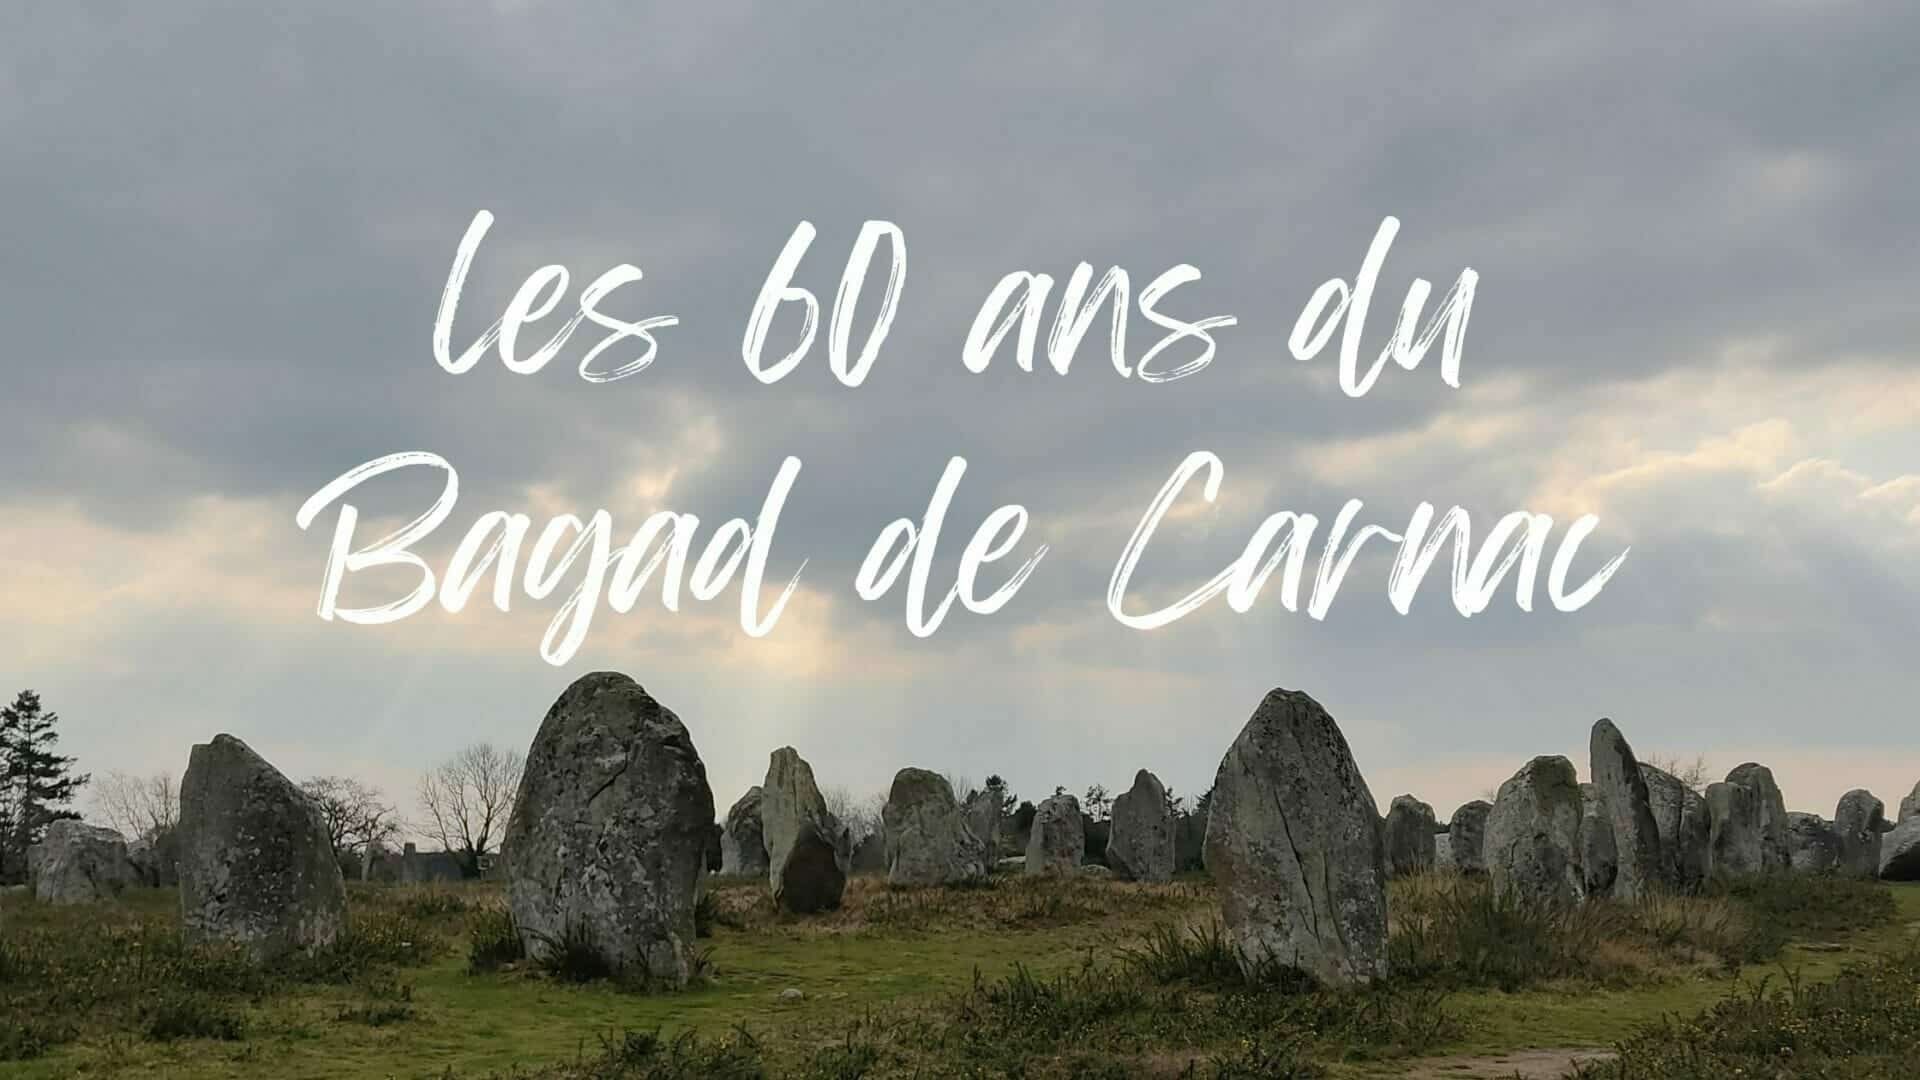 Les 60 ans du Bagad de Carnac, les 26, 27 et 28 mai 2023